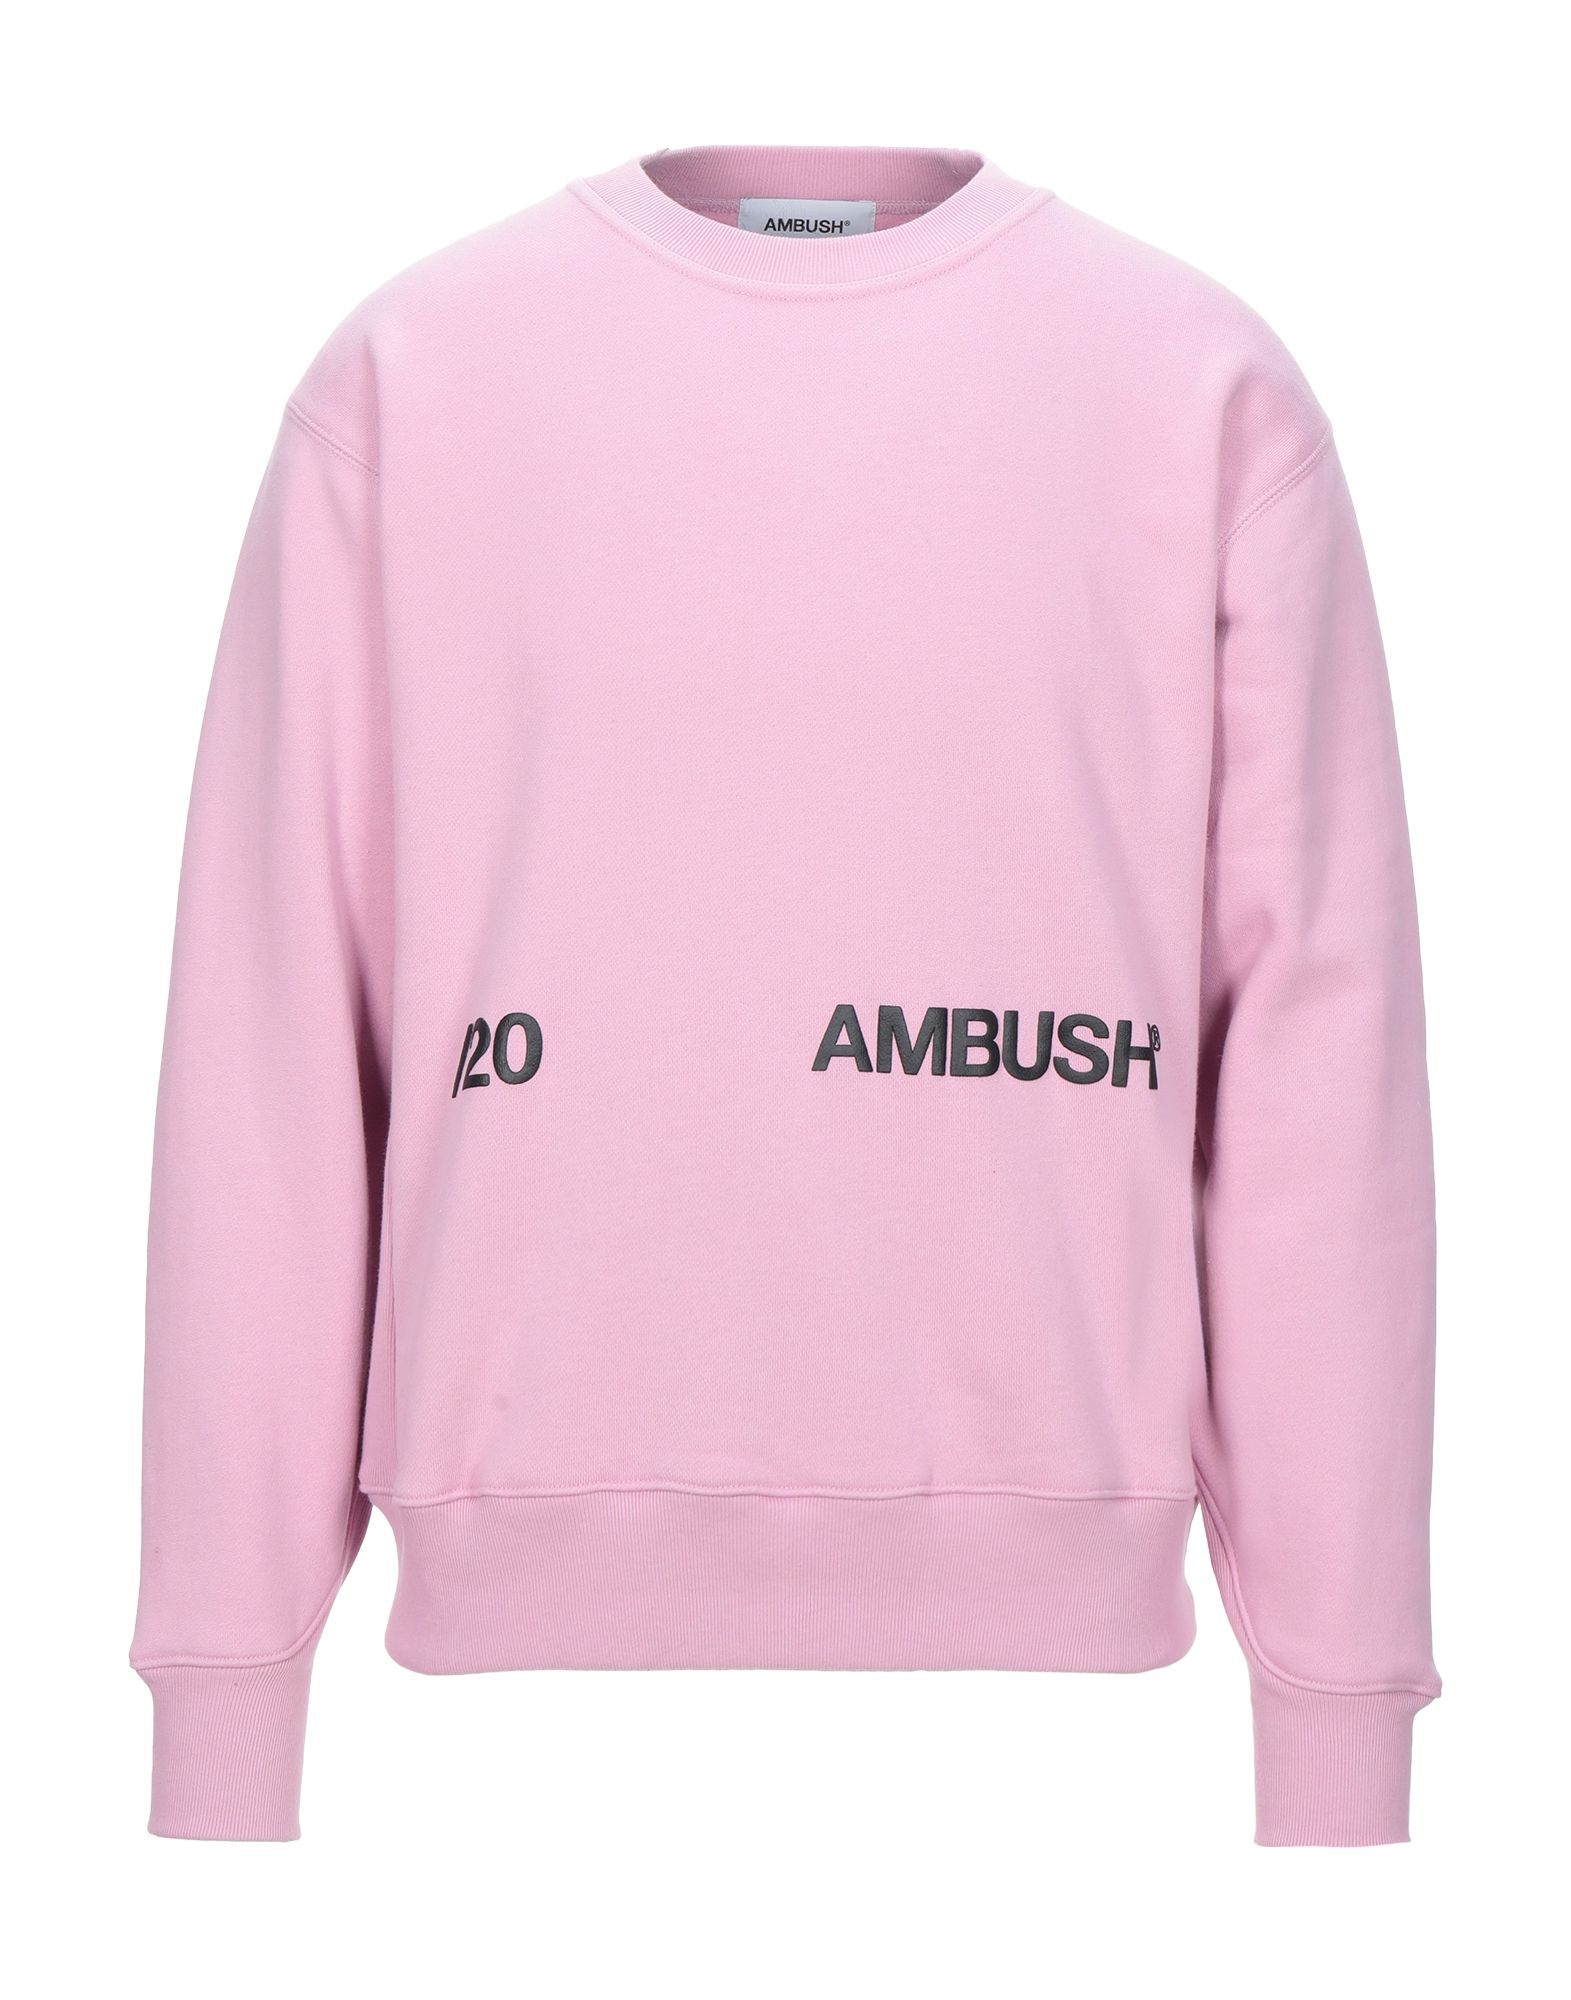 AMBUSH Sweatshirt Herren Rosa von AMBUSH